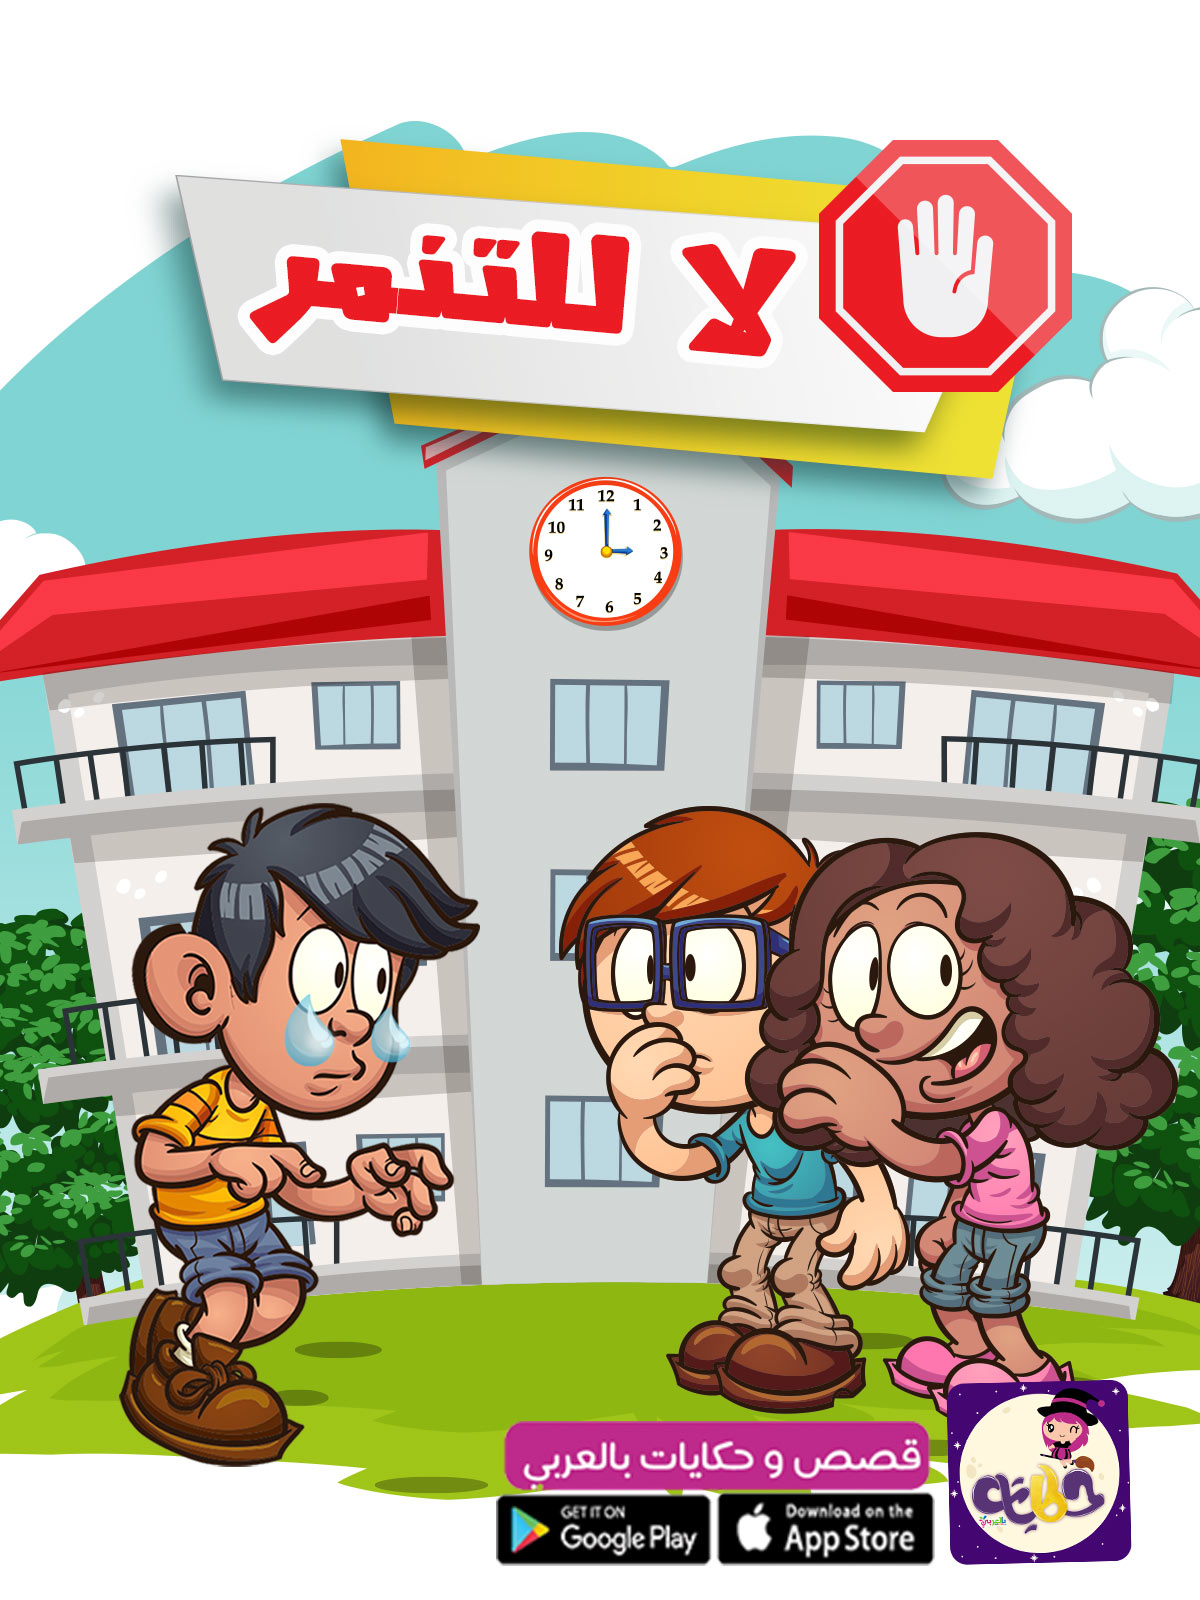 قصة لا للتنمر قصة عن التنمر للاطفال قصص مصورة للاطفال بتطبيق حكايات بالعربي